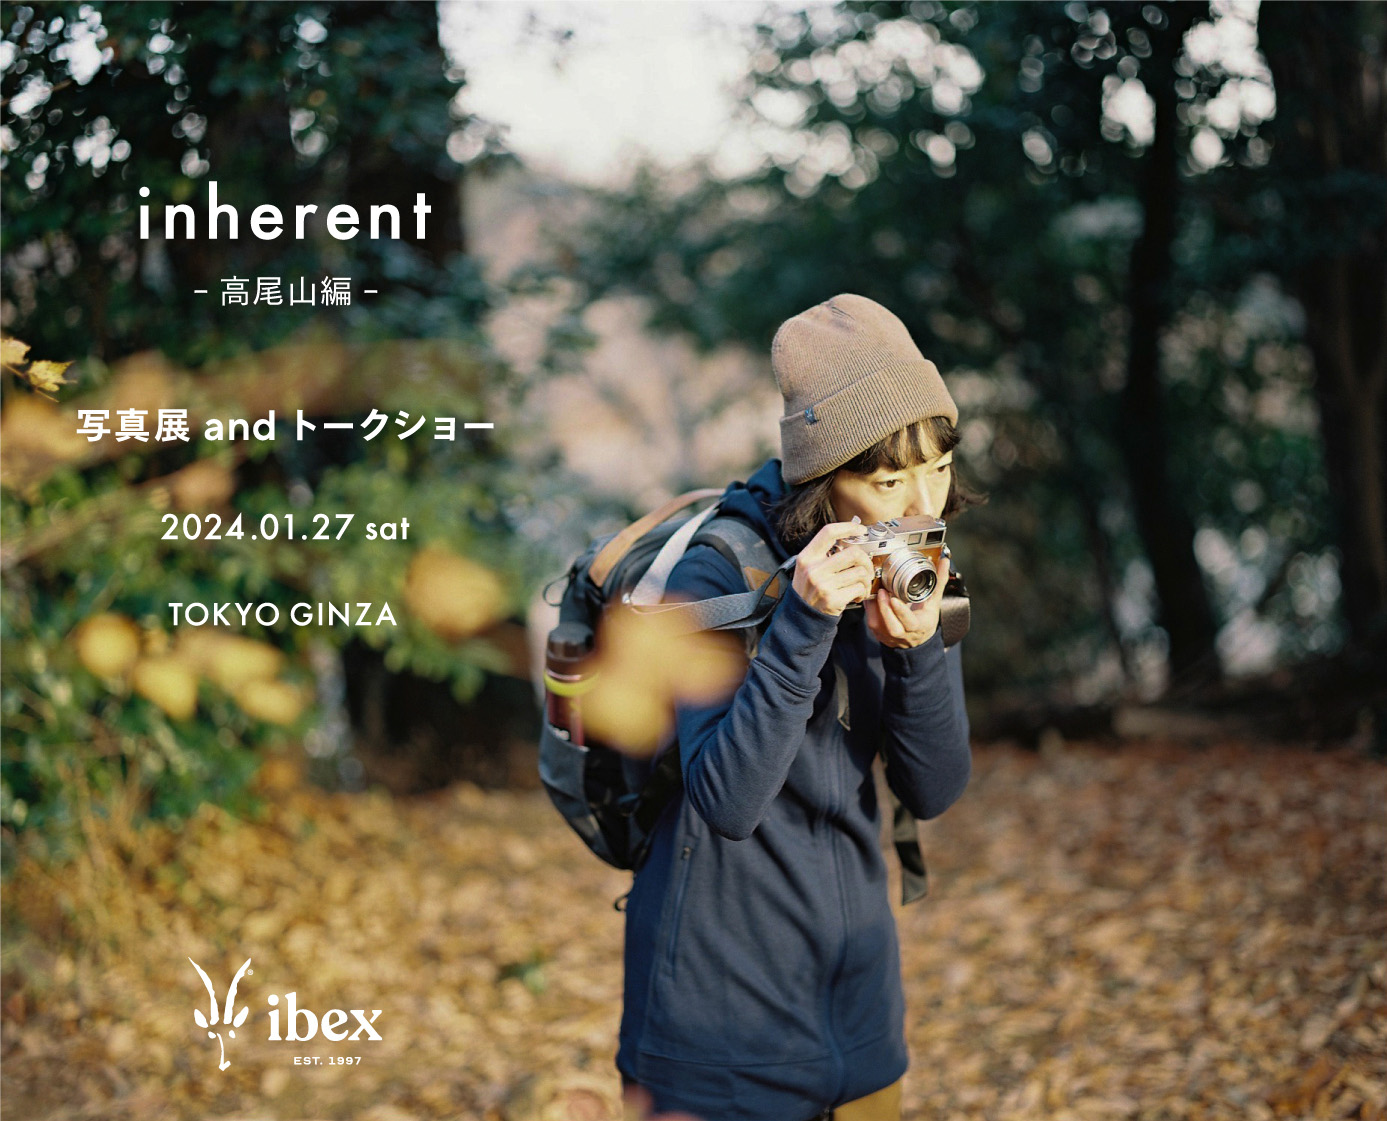 Ibex presents「inherent -⾼尾⼭編-」開催のお知らせ